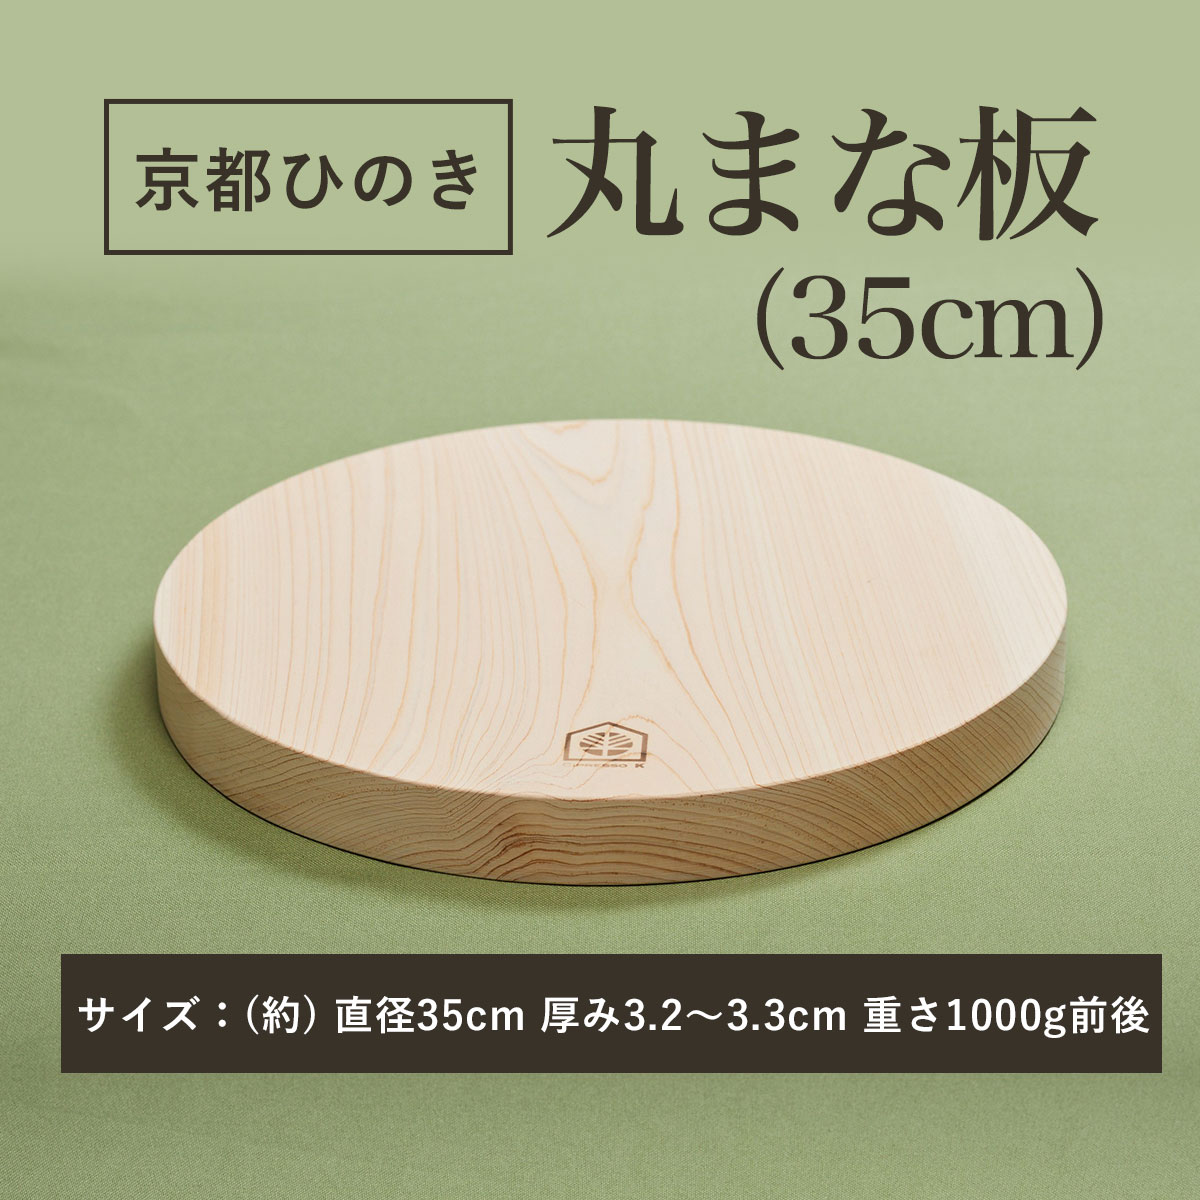 【ふるさと納税】 京都丹州ひのきの丸まな板 35cm 一枚板